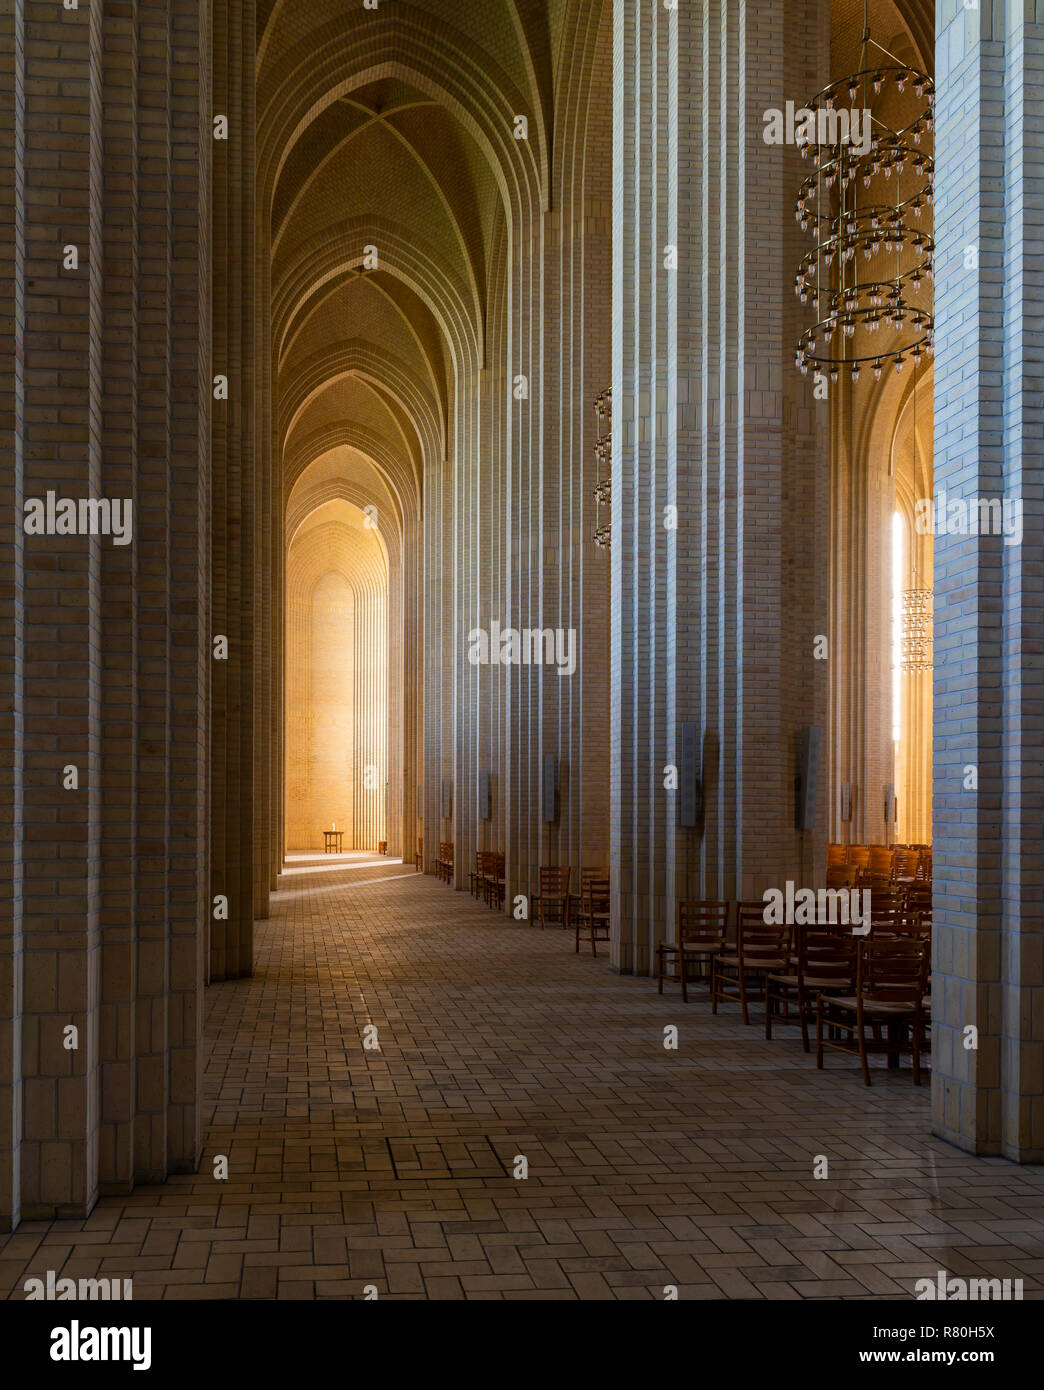 Copenhague, Dinamarca - 18 de septiembre de 2018: Interior de la iglesia (Grundtvigs kirke) con pilares de ladrillo y la luz del sol. Foto de stock